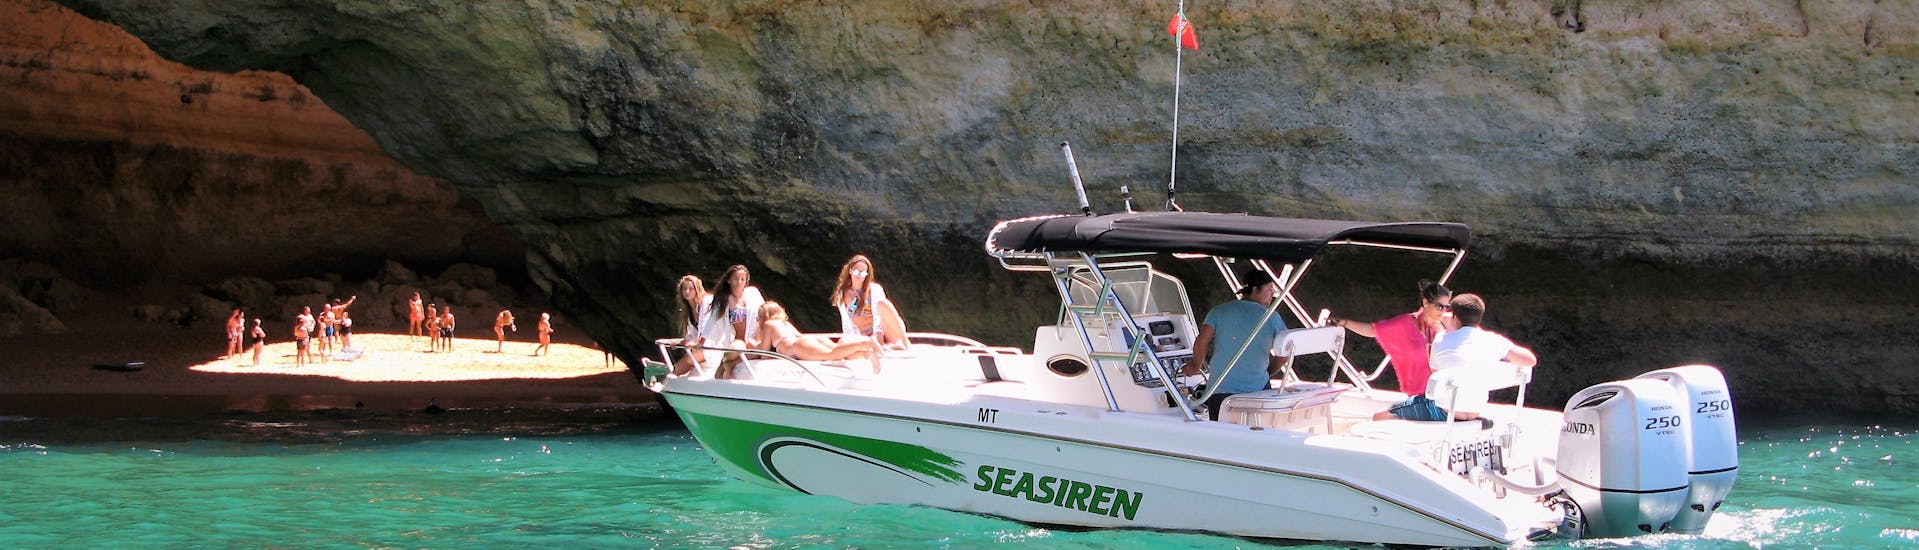 Gita in barca privata alle grotte di Benagil e alla spiaggia di Marinha.